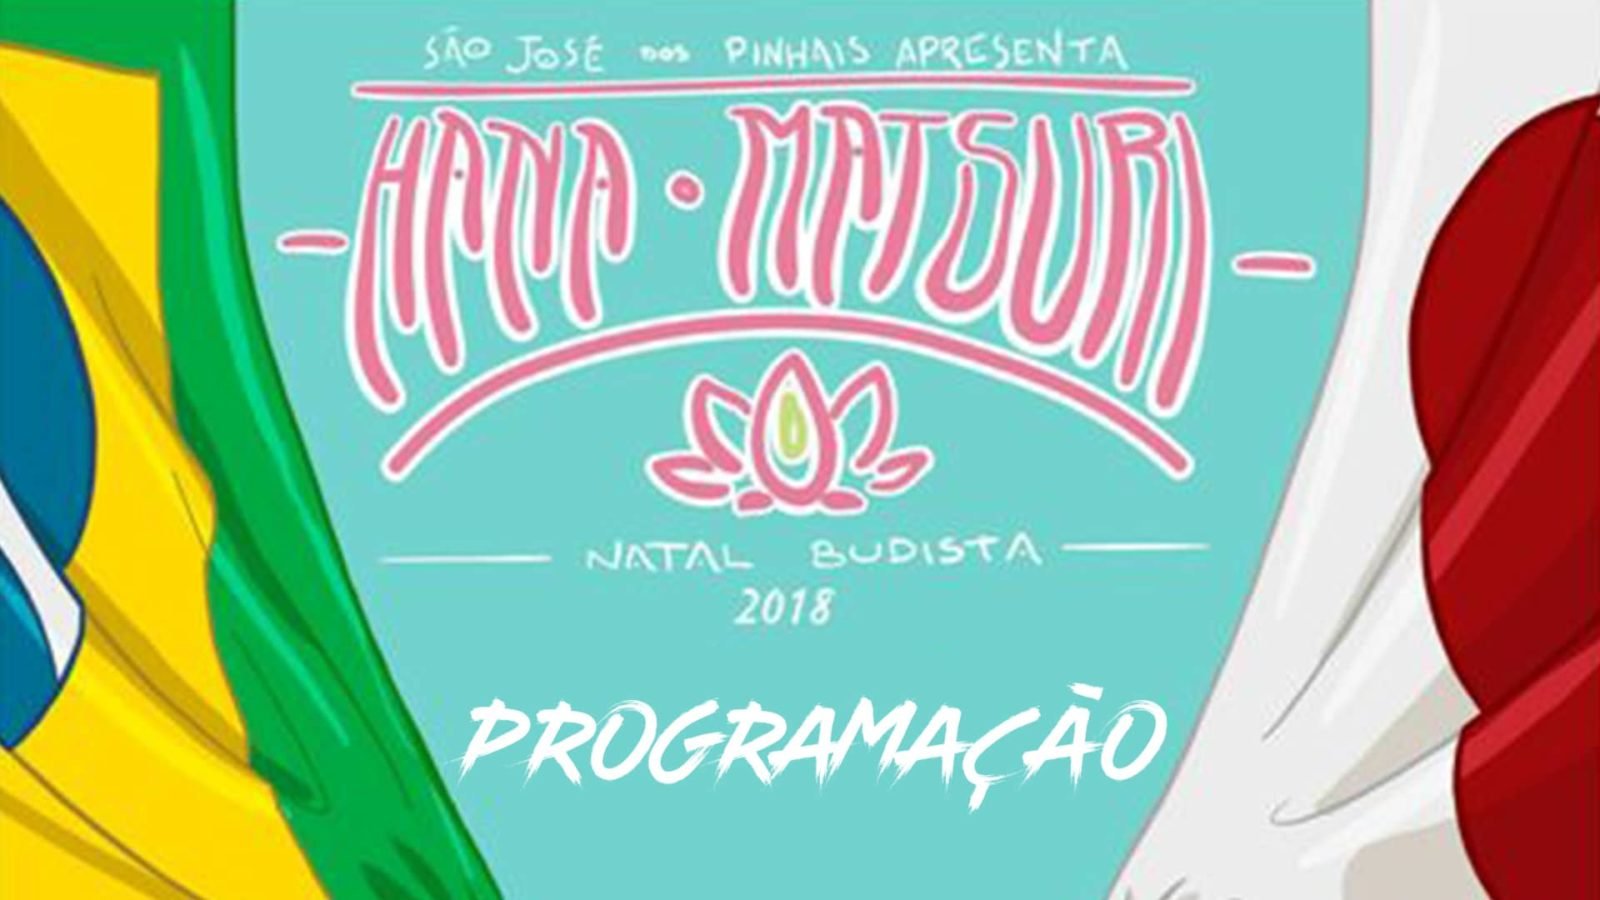 Programação do Hana Matsuri 2018